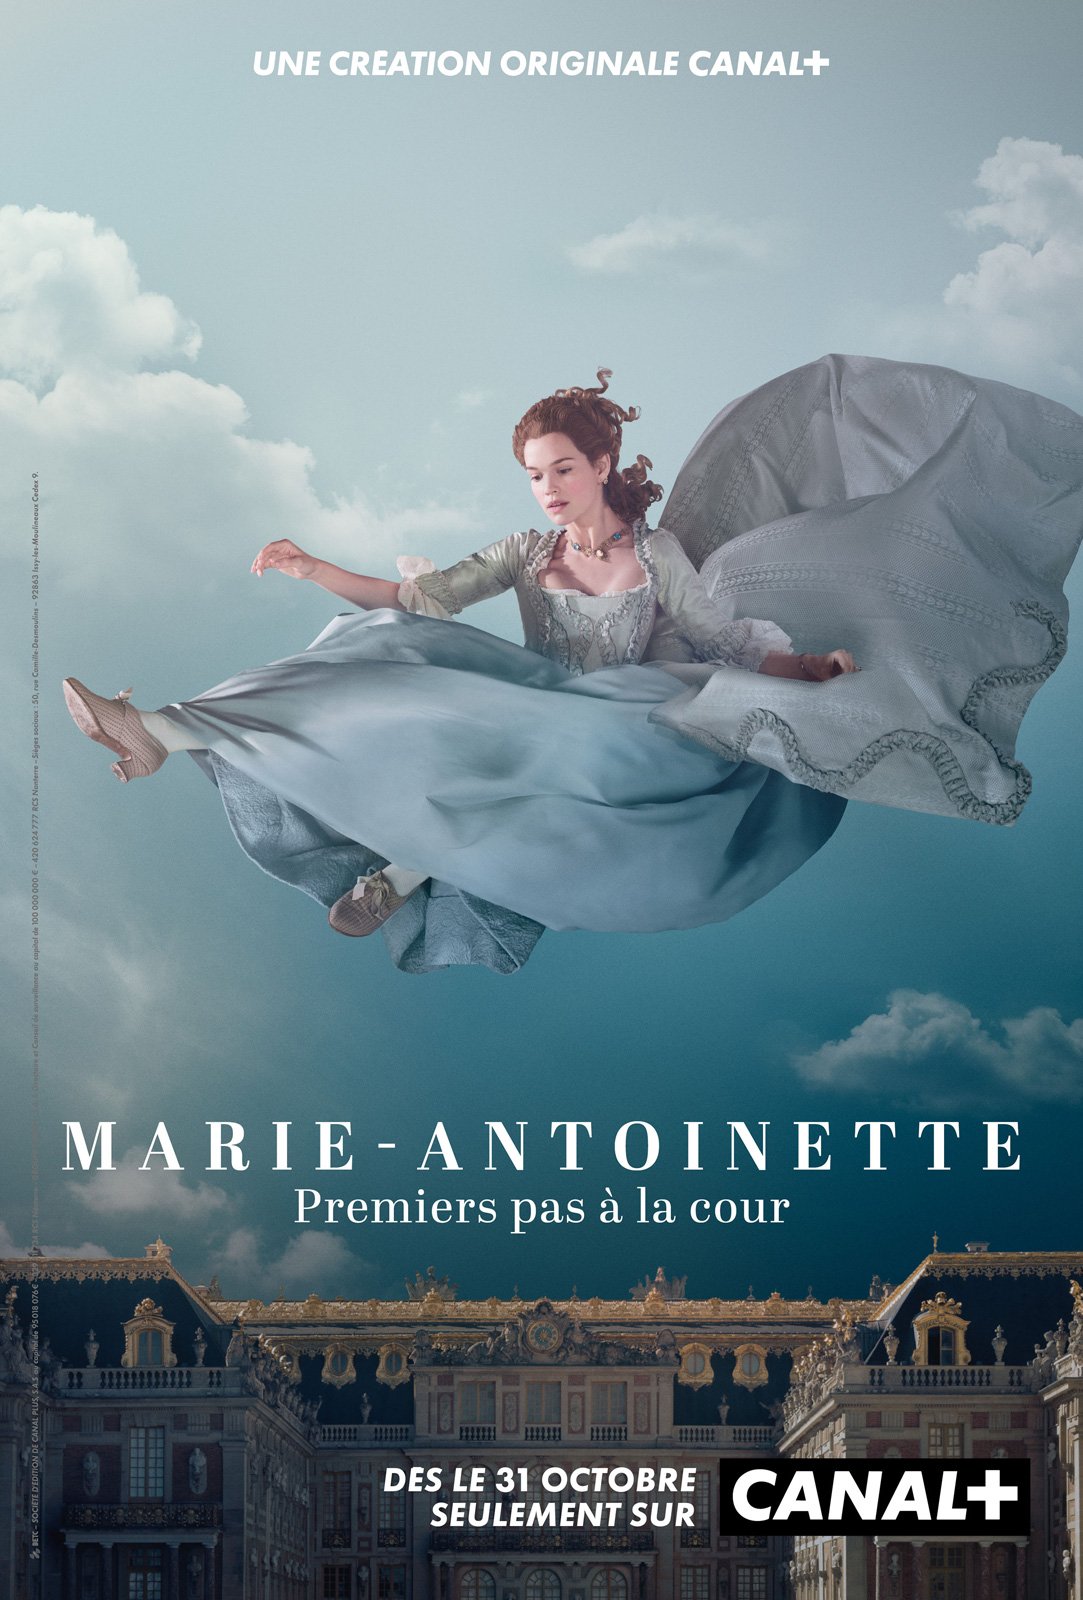 [心得] 瑪麗安東妮 Marie Antoinette S01 (雷) Canal+ 法宮劇